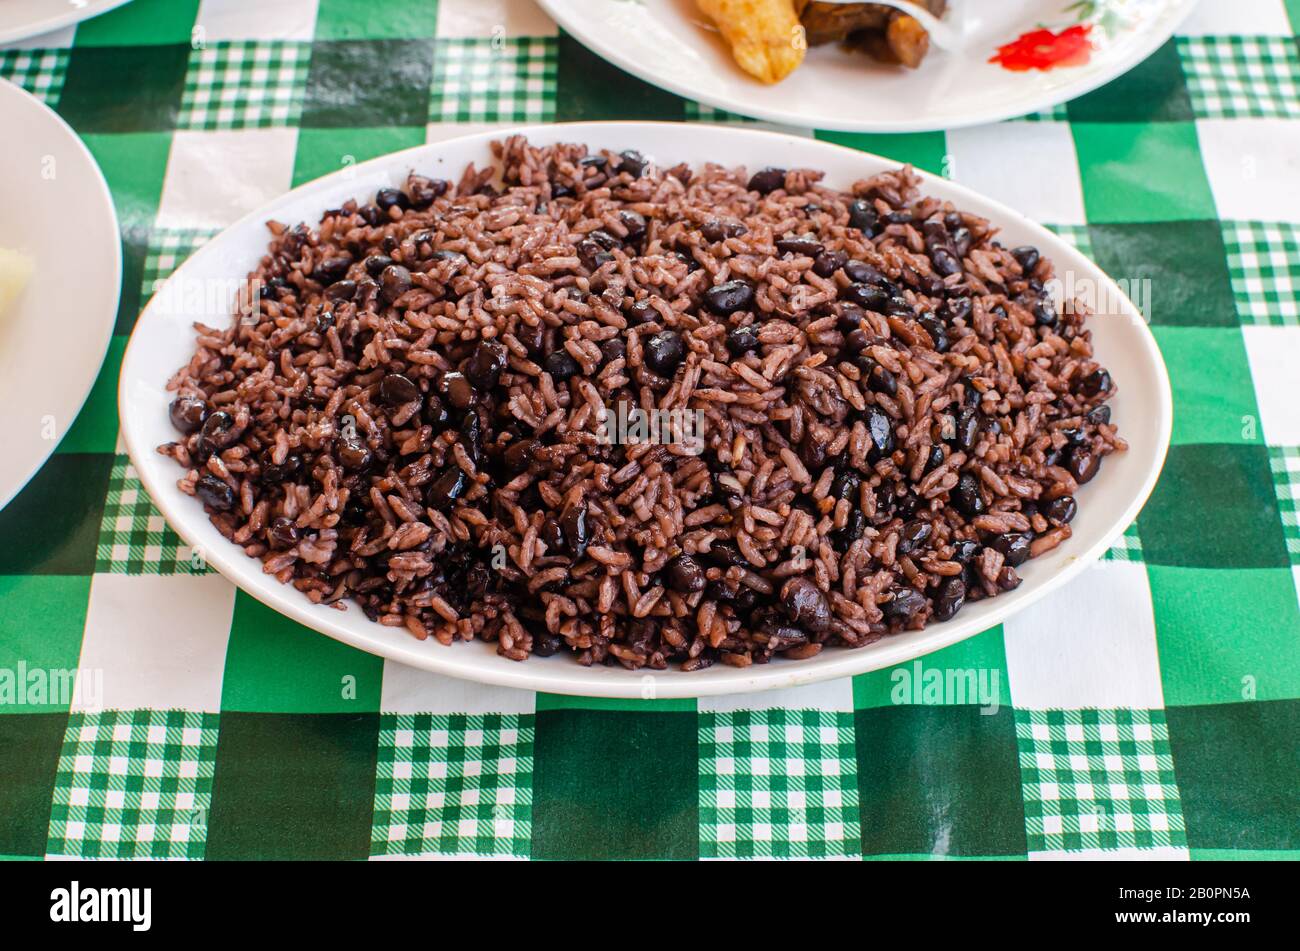 Traditioneller kubanischer Reis mit schwarzen Bohnen, auch bekannt als 'Moros y cristianos'. Wird es mit schwarzen Bohnen hergestellt. Congri Reis wird mit roten Bohnen hergestellt Stockfoto